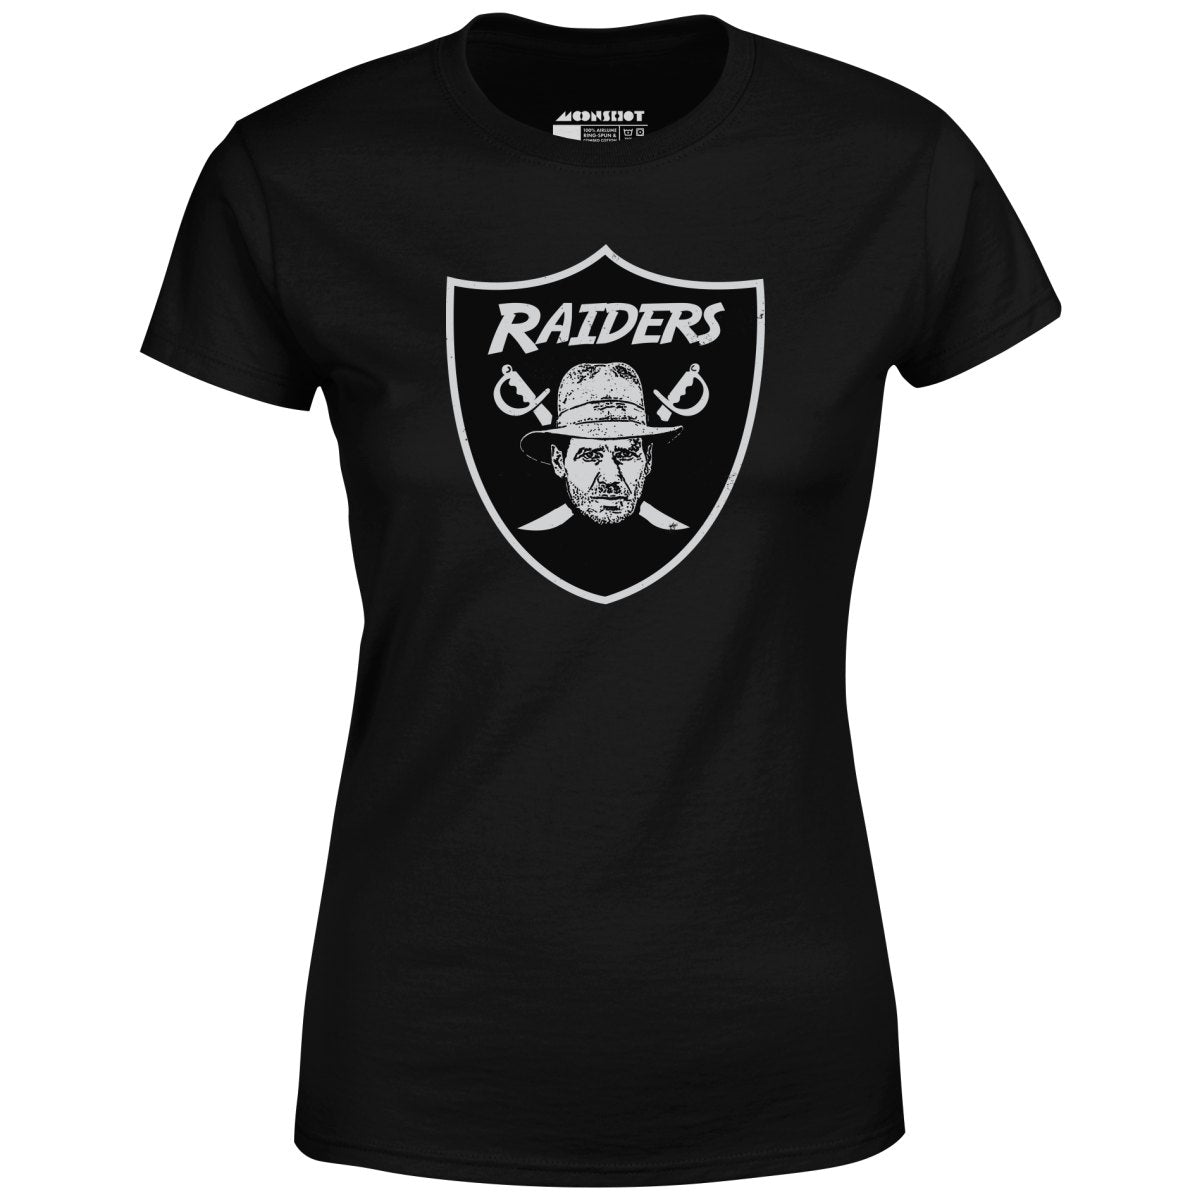 Raiders Parody Indiana Jones Mashup - Women's T-Shirt